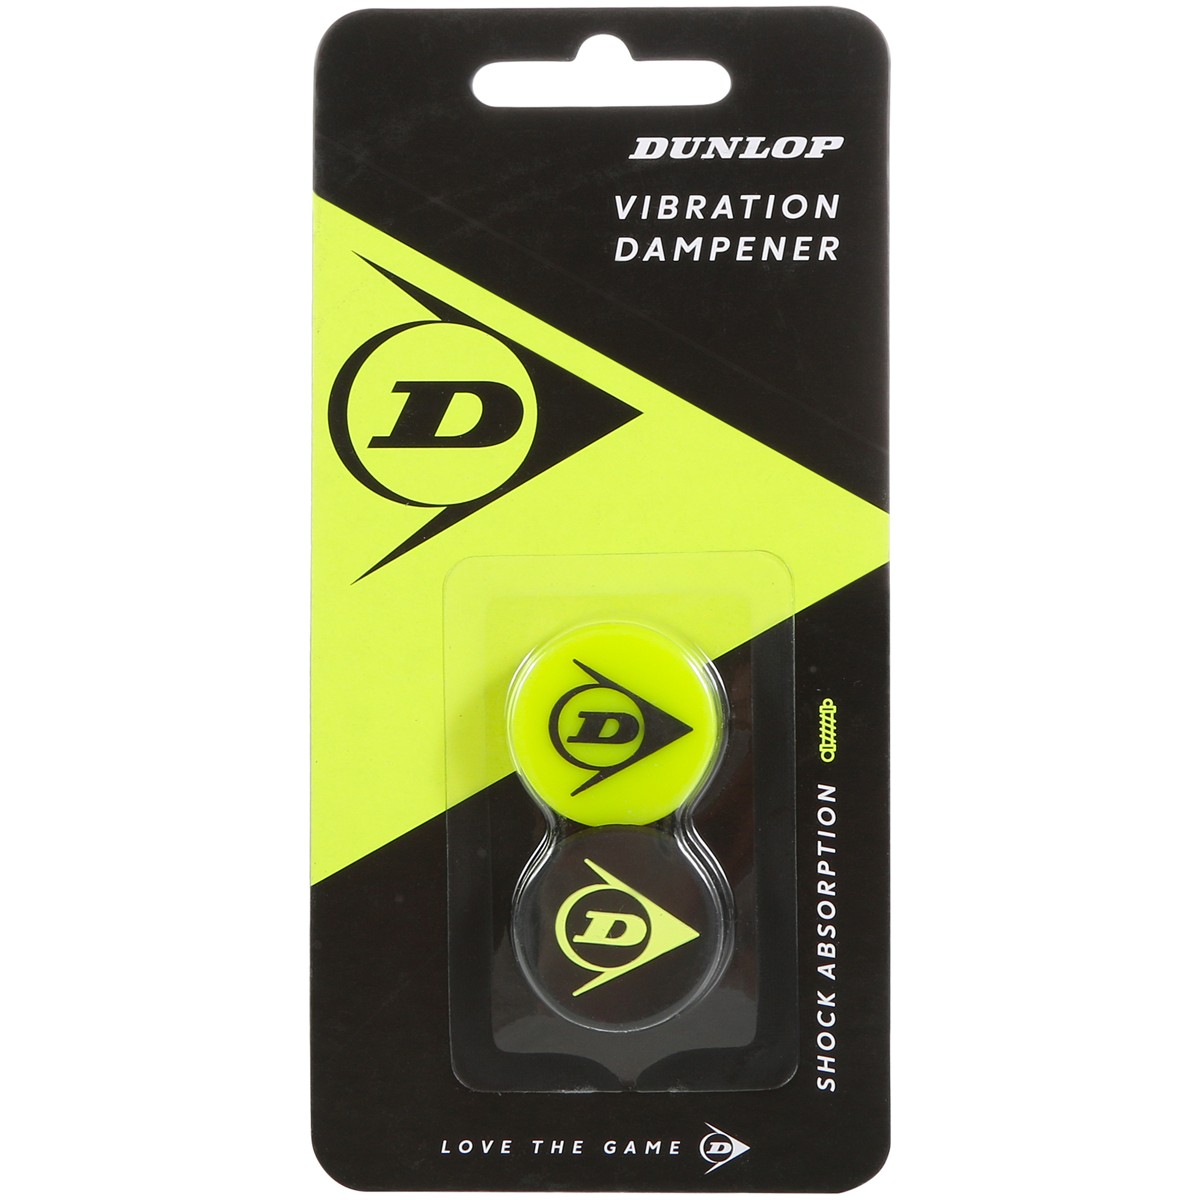 Dunlop Flying D Dampener Yellow/Black